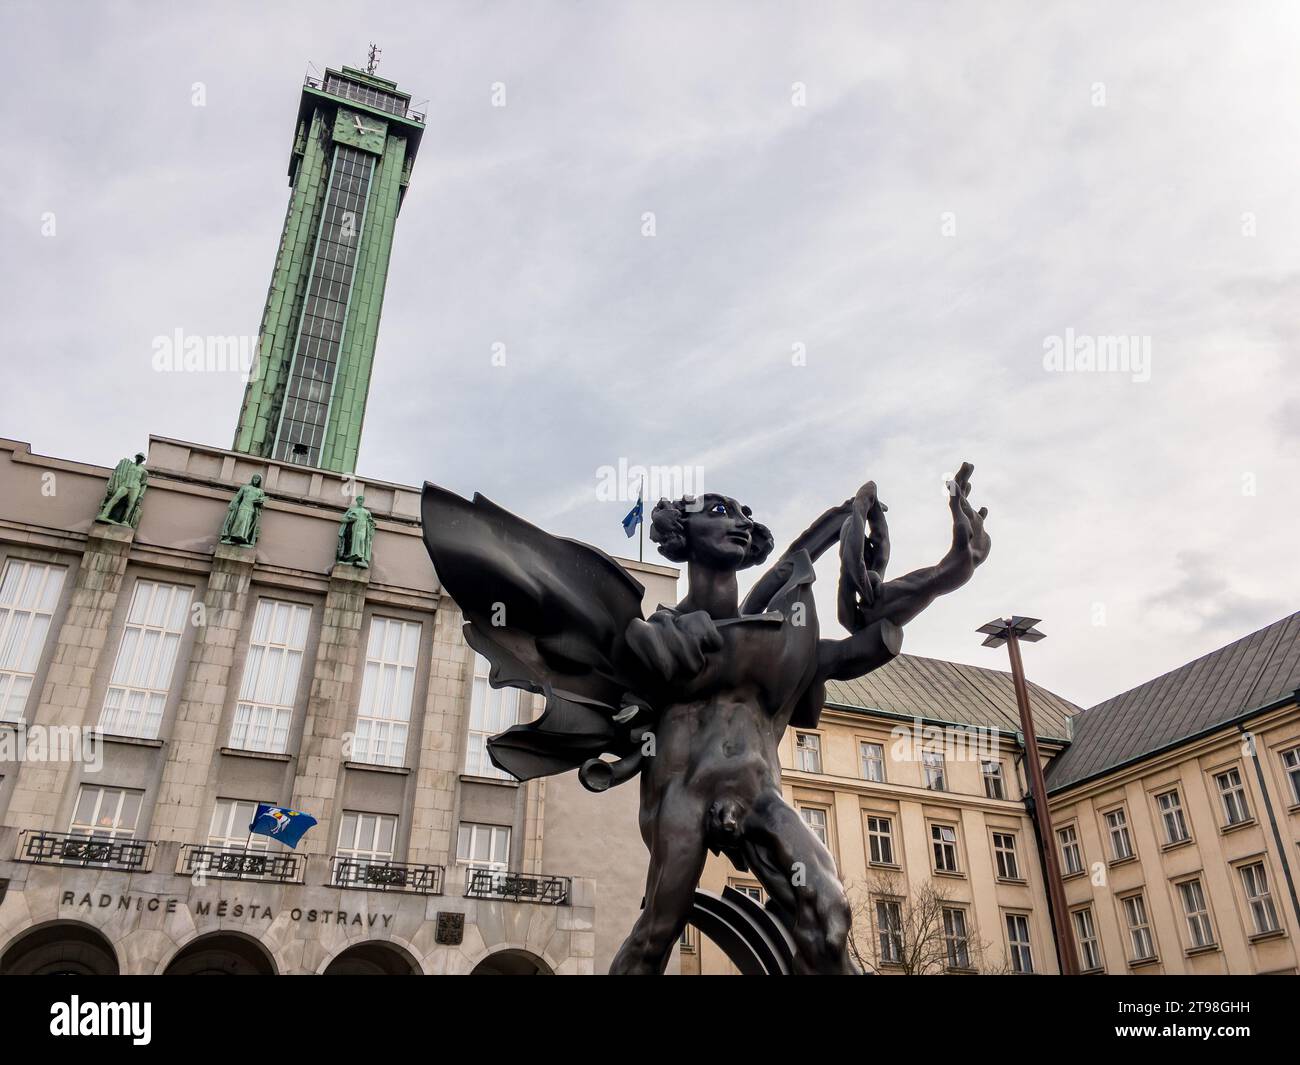 OSTRAVA, RÉPUBLIQUE TCHÈQUE - 28 FÉVRIER 2017 : statue d'Icare réalisée par Frantisek Storek devant la mairie de Nova radnice à Ostrava Banque D'Images